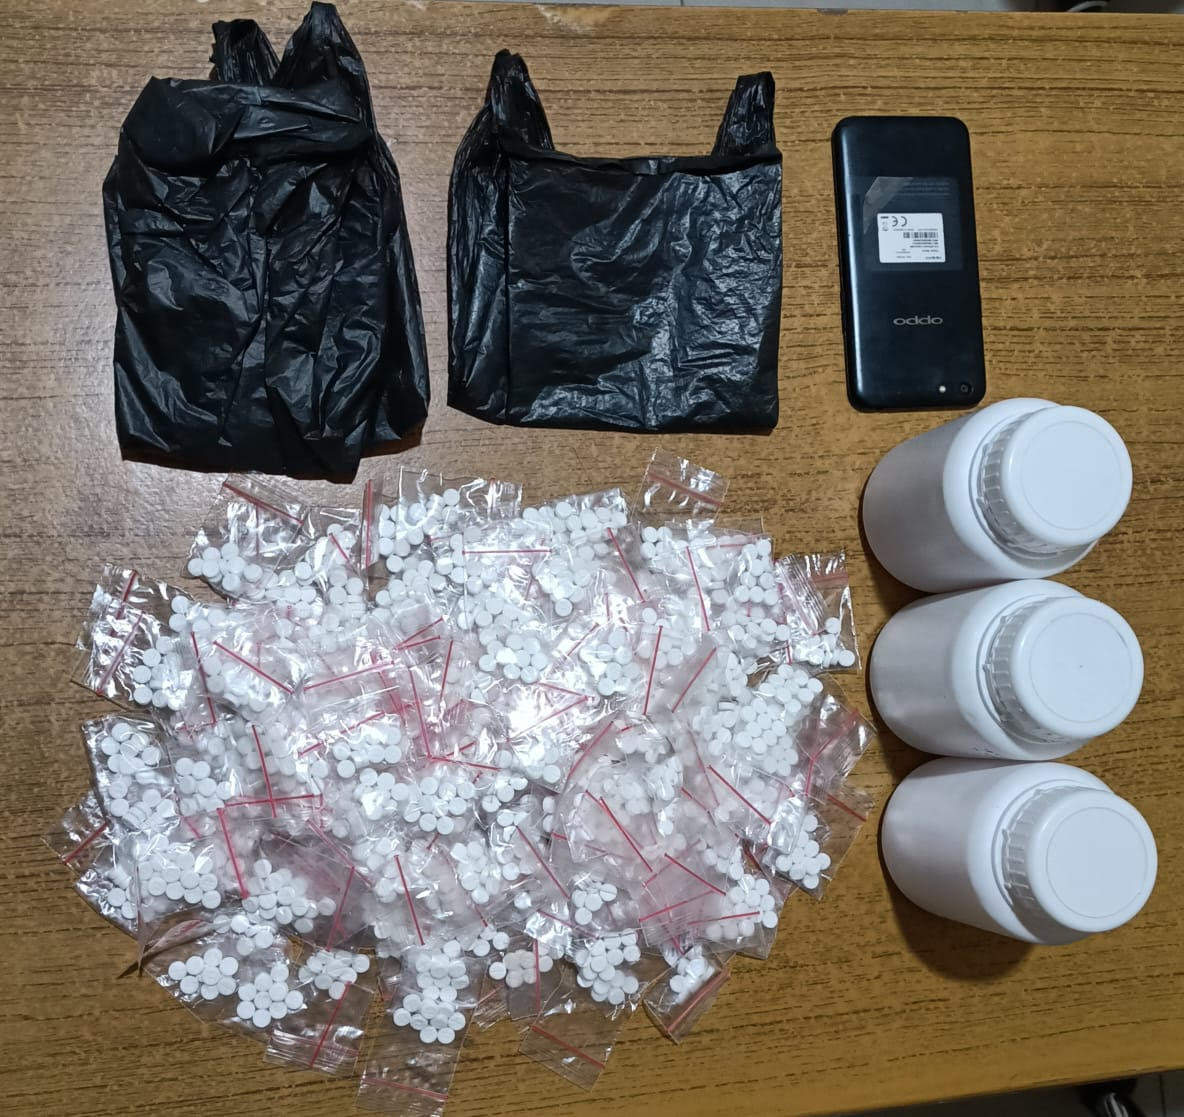 Pengendar Narkoba di Mojokerto Ditangkap, Ribuan Pil Double L Disita 